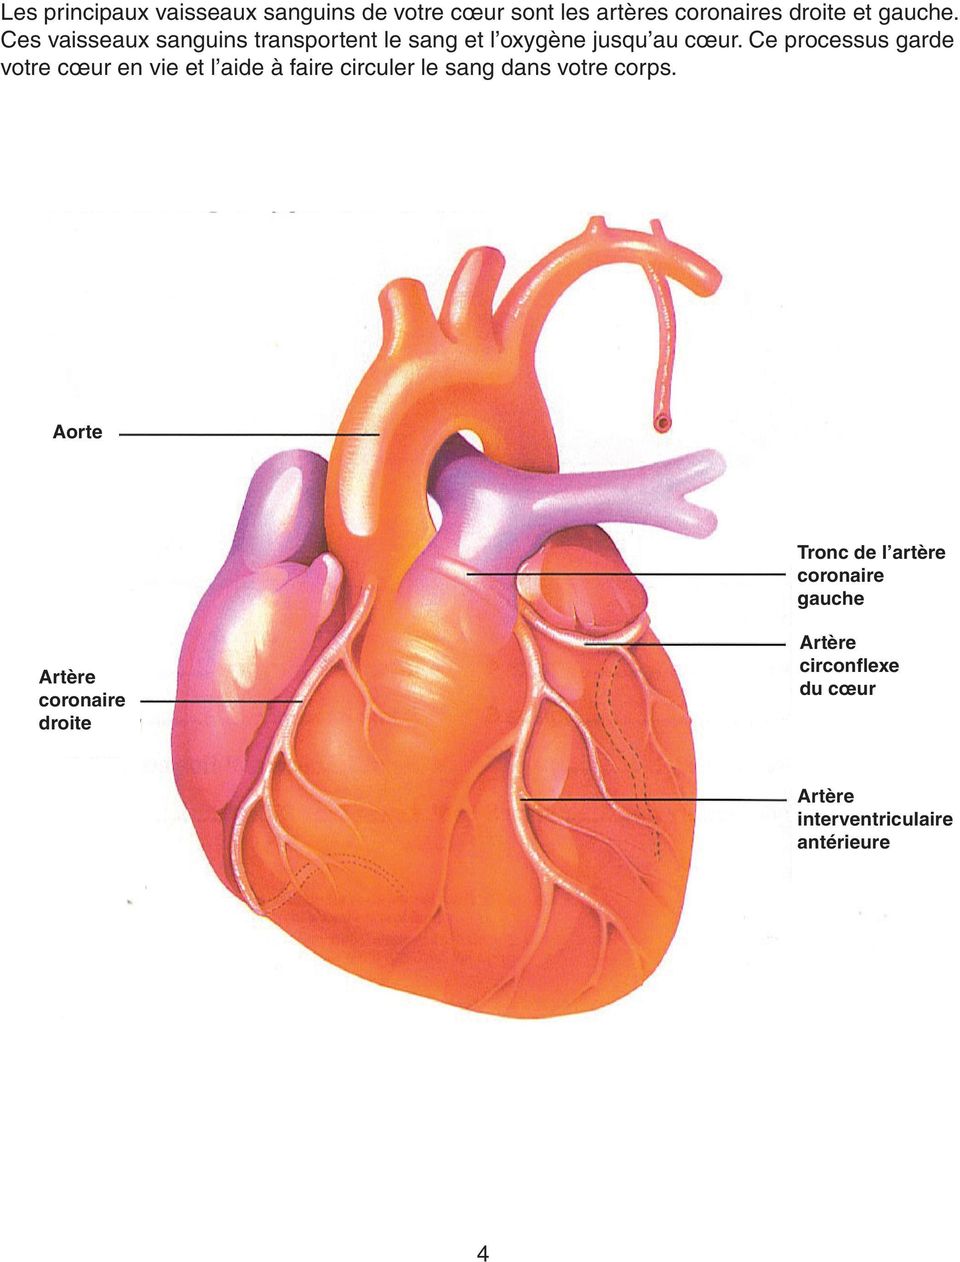 Ce processus garde votre cœur en vie et l aide à faire circuler le sang dans votre corps.